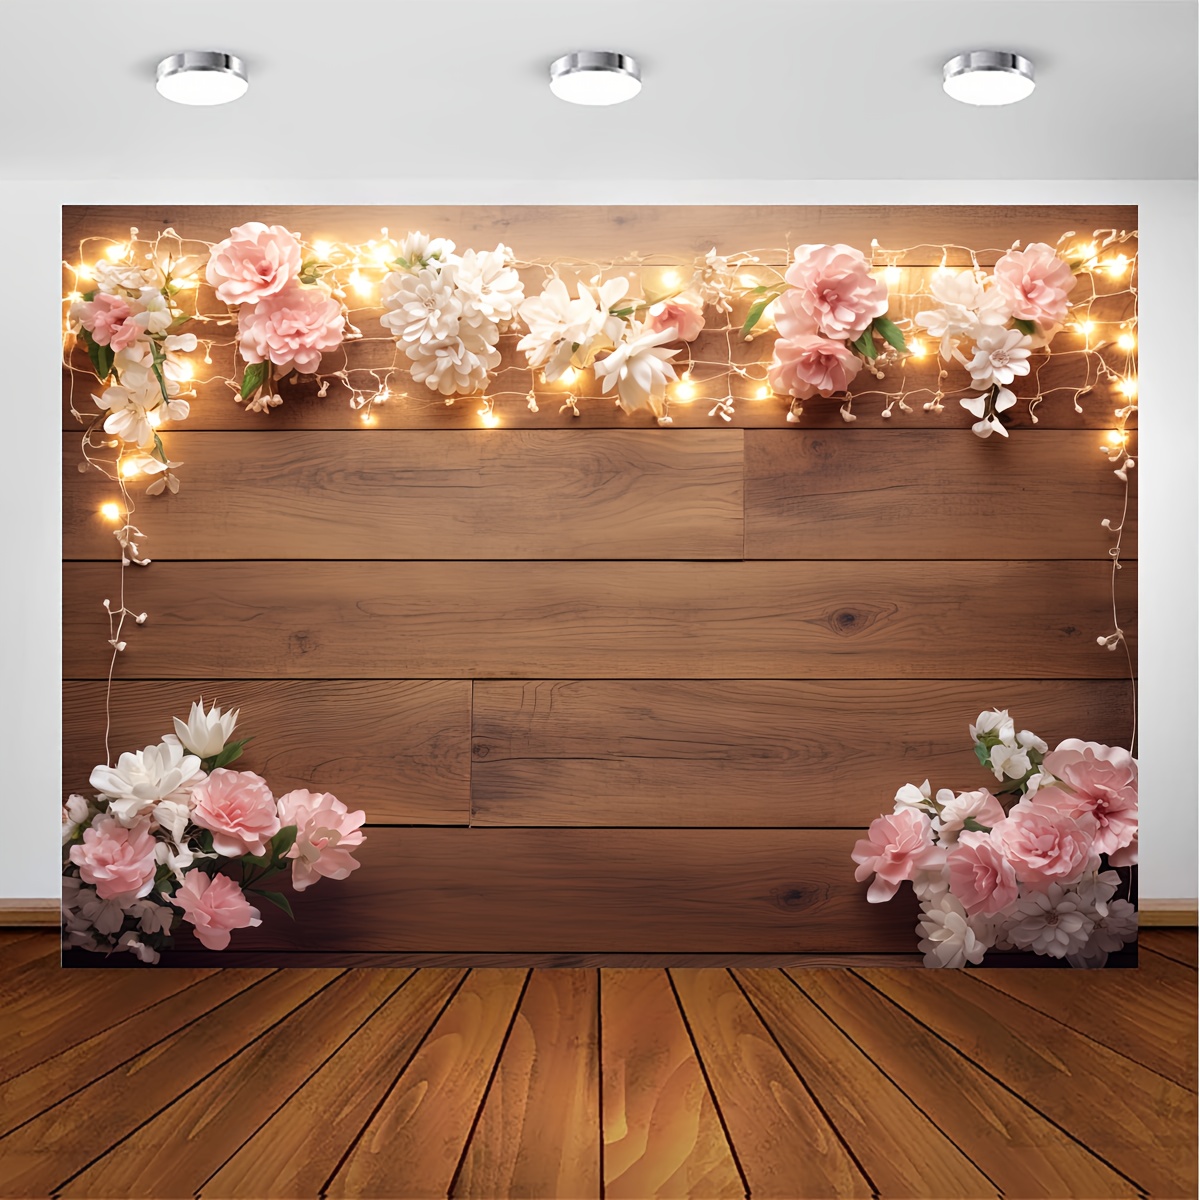 1 telón de fondo para fotografía de pared de madera de 5x3 pies, con flores  de primavera y pétalos para fondo fotográfico de fiesta de cumpleaños, acc